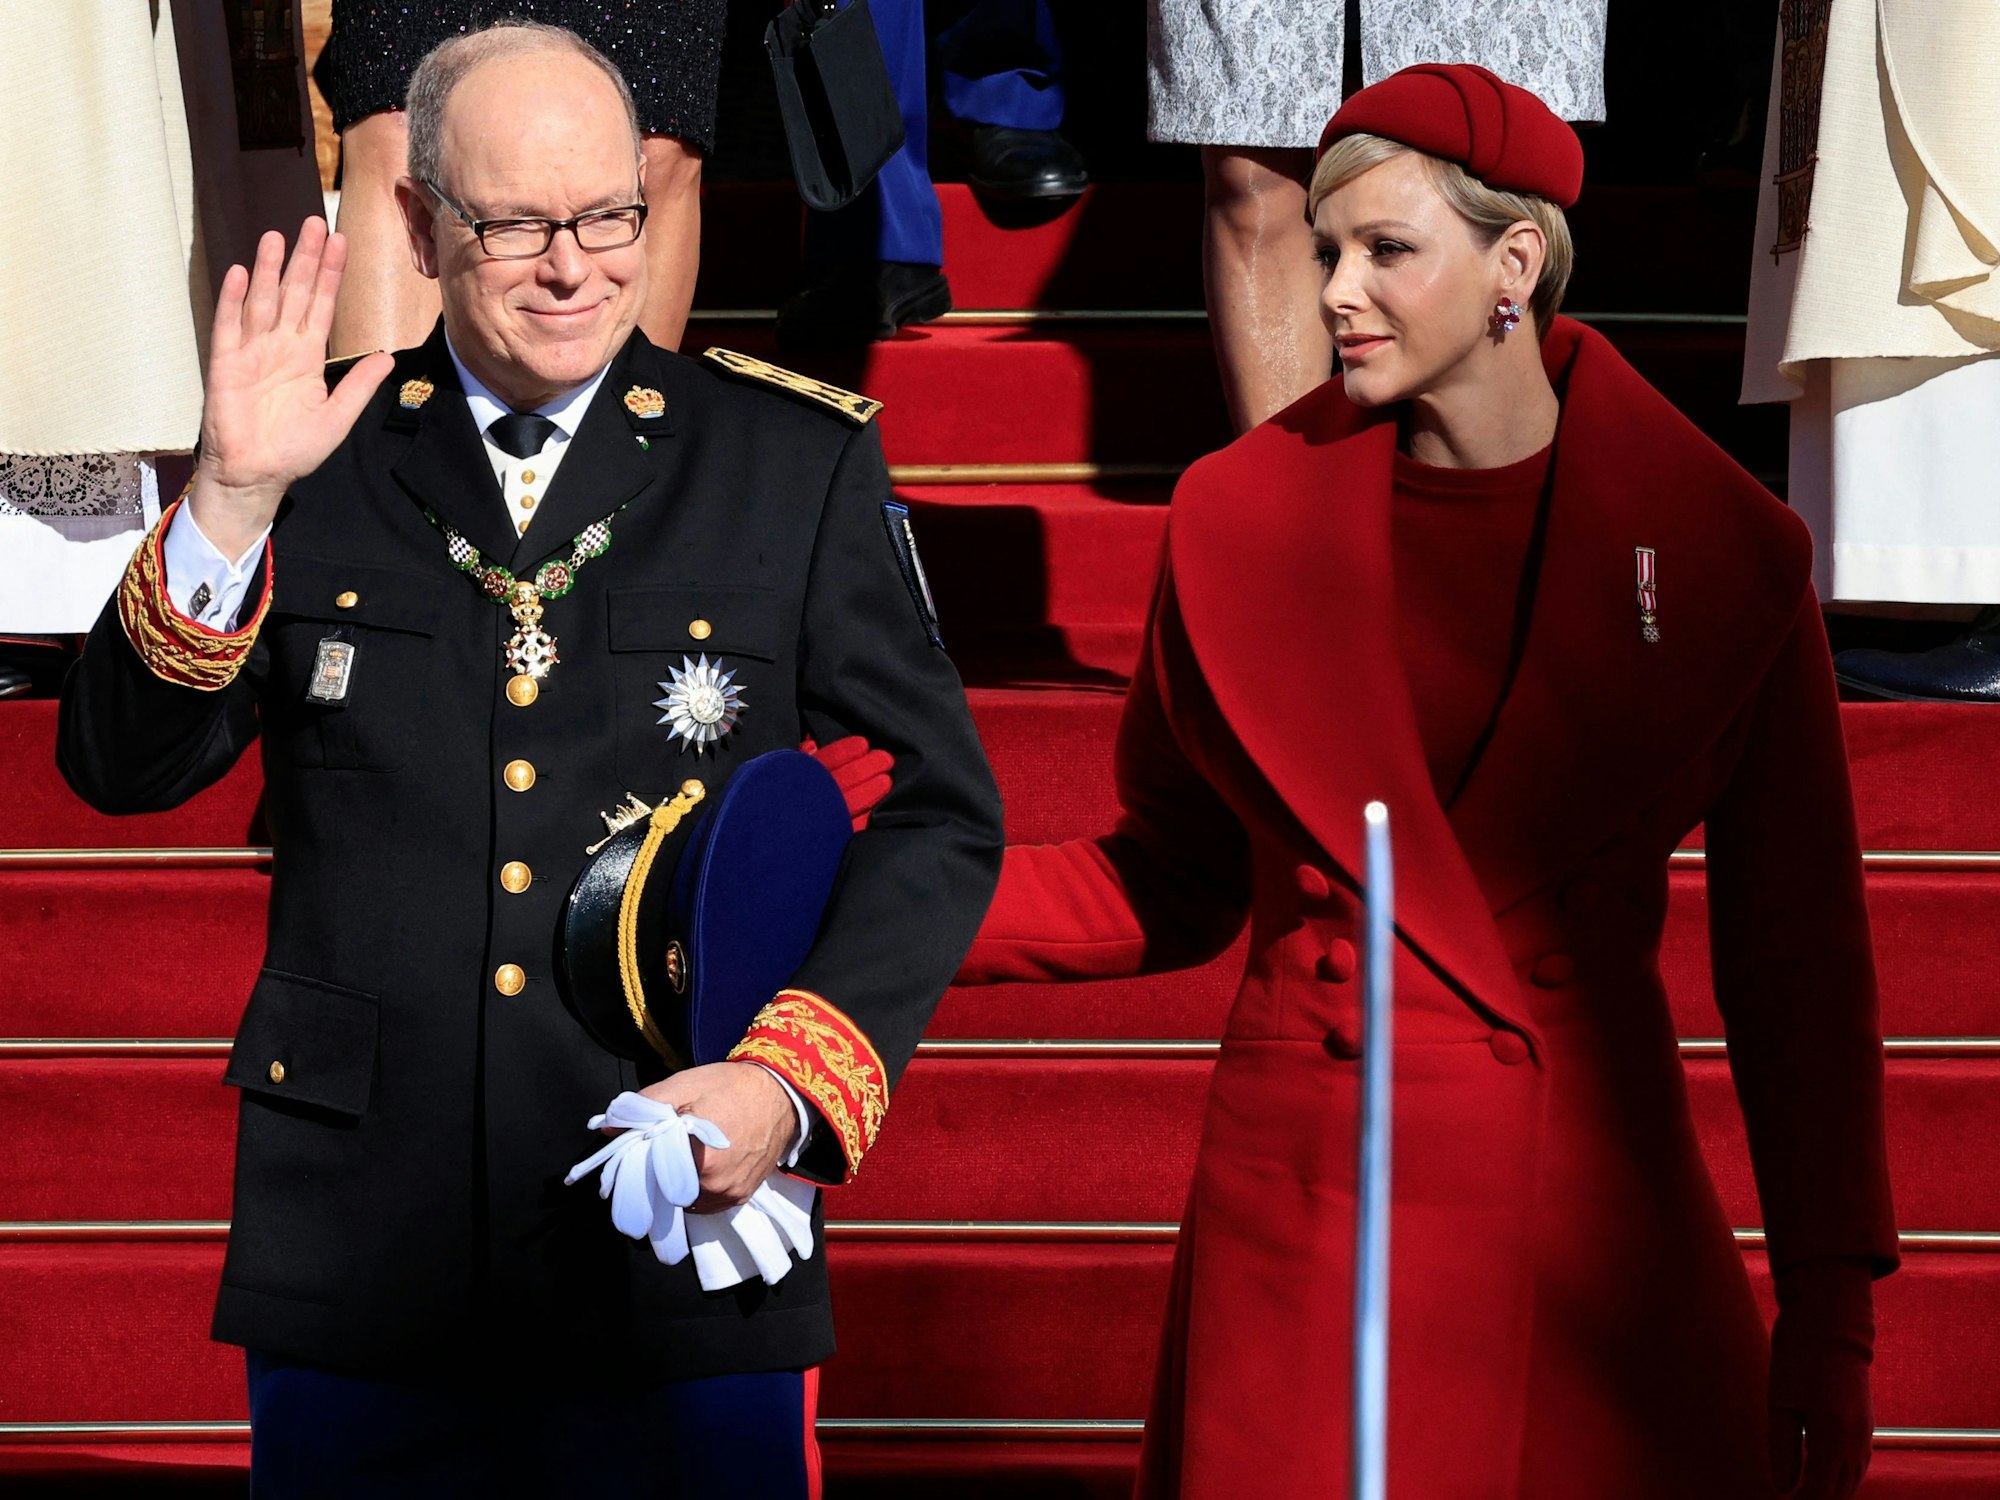 Fürst Albert II. von Monaco (l.), flankiert von Fürstin Charlène von Monaco (r.), beim Verlassen der Kathedrale von Monaco nach der Teilnahme an einer Feier zum Nationalfeiertag in Monaco.